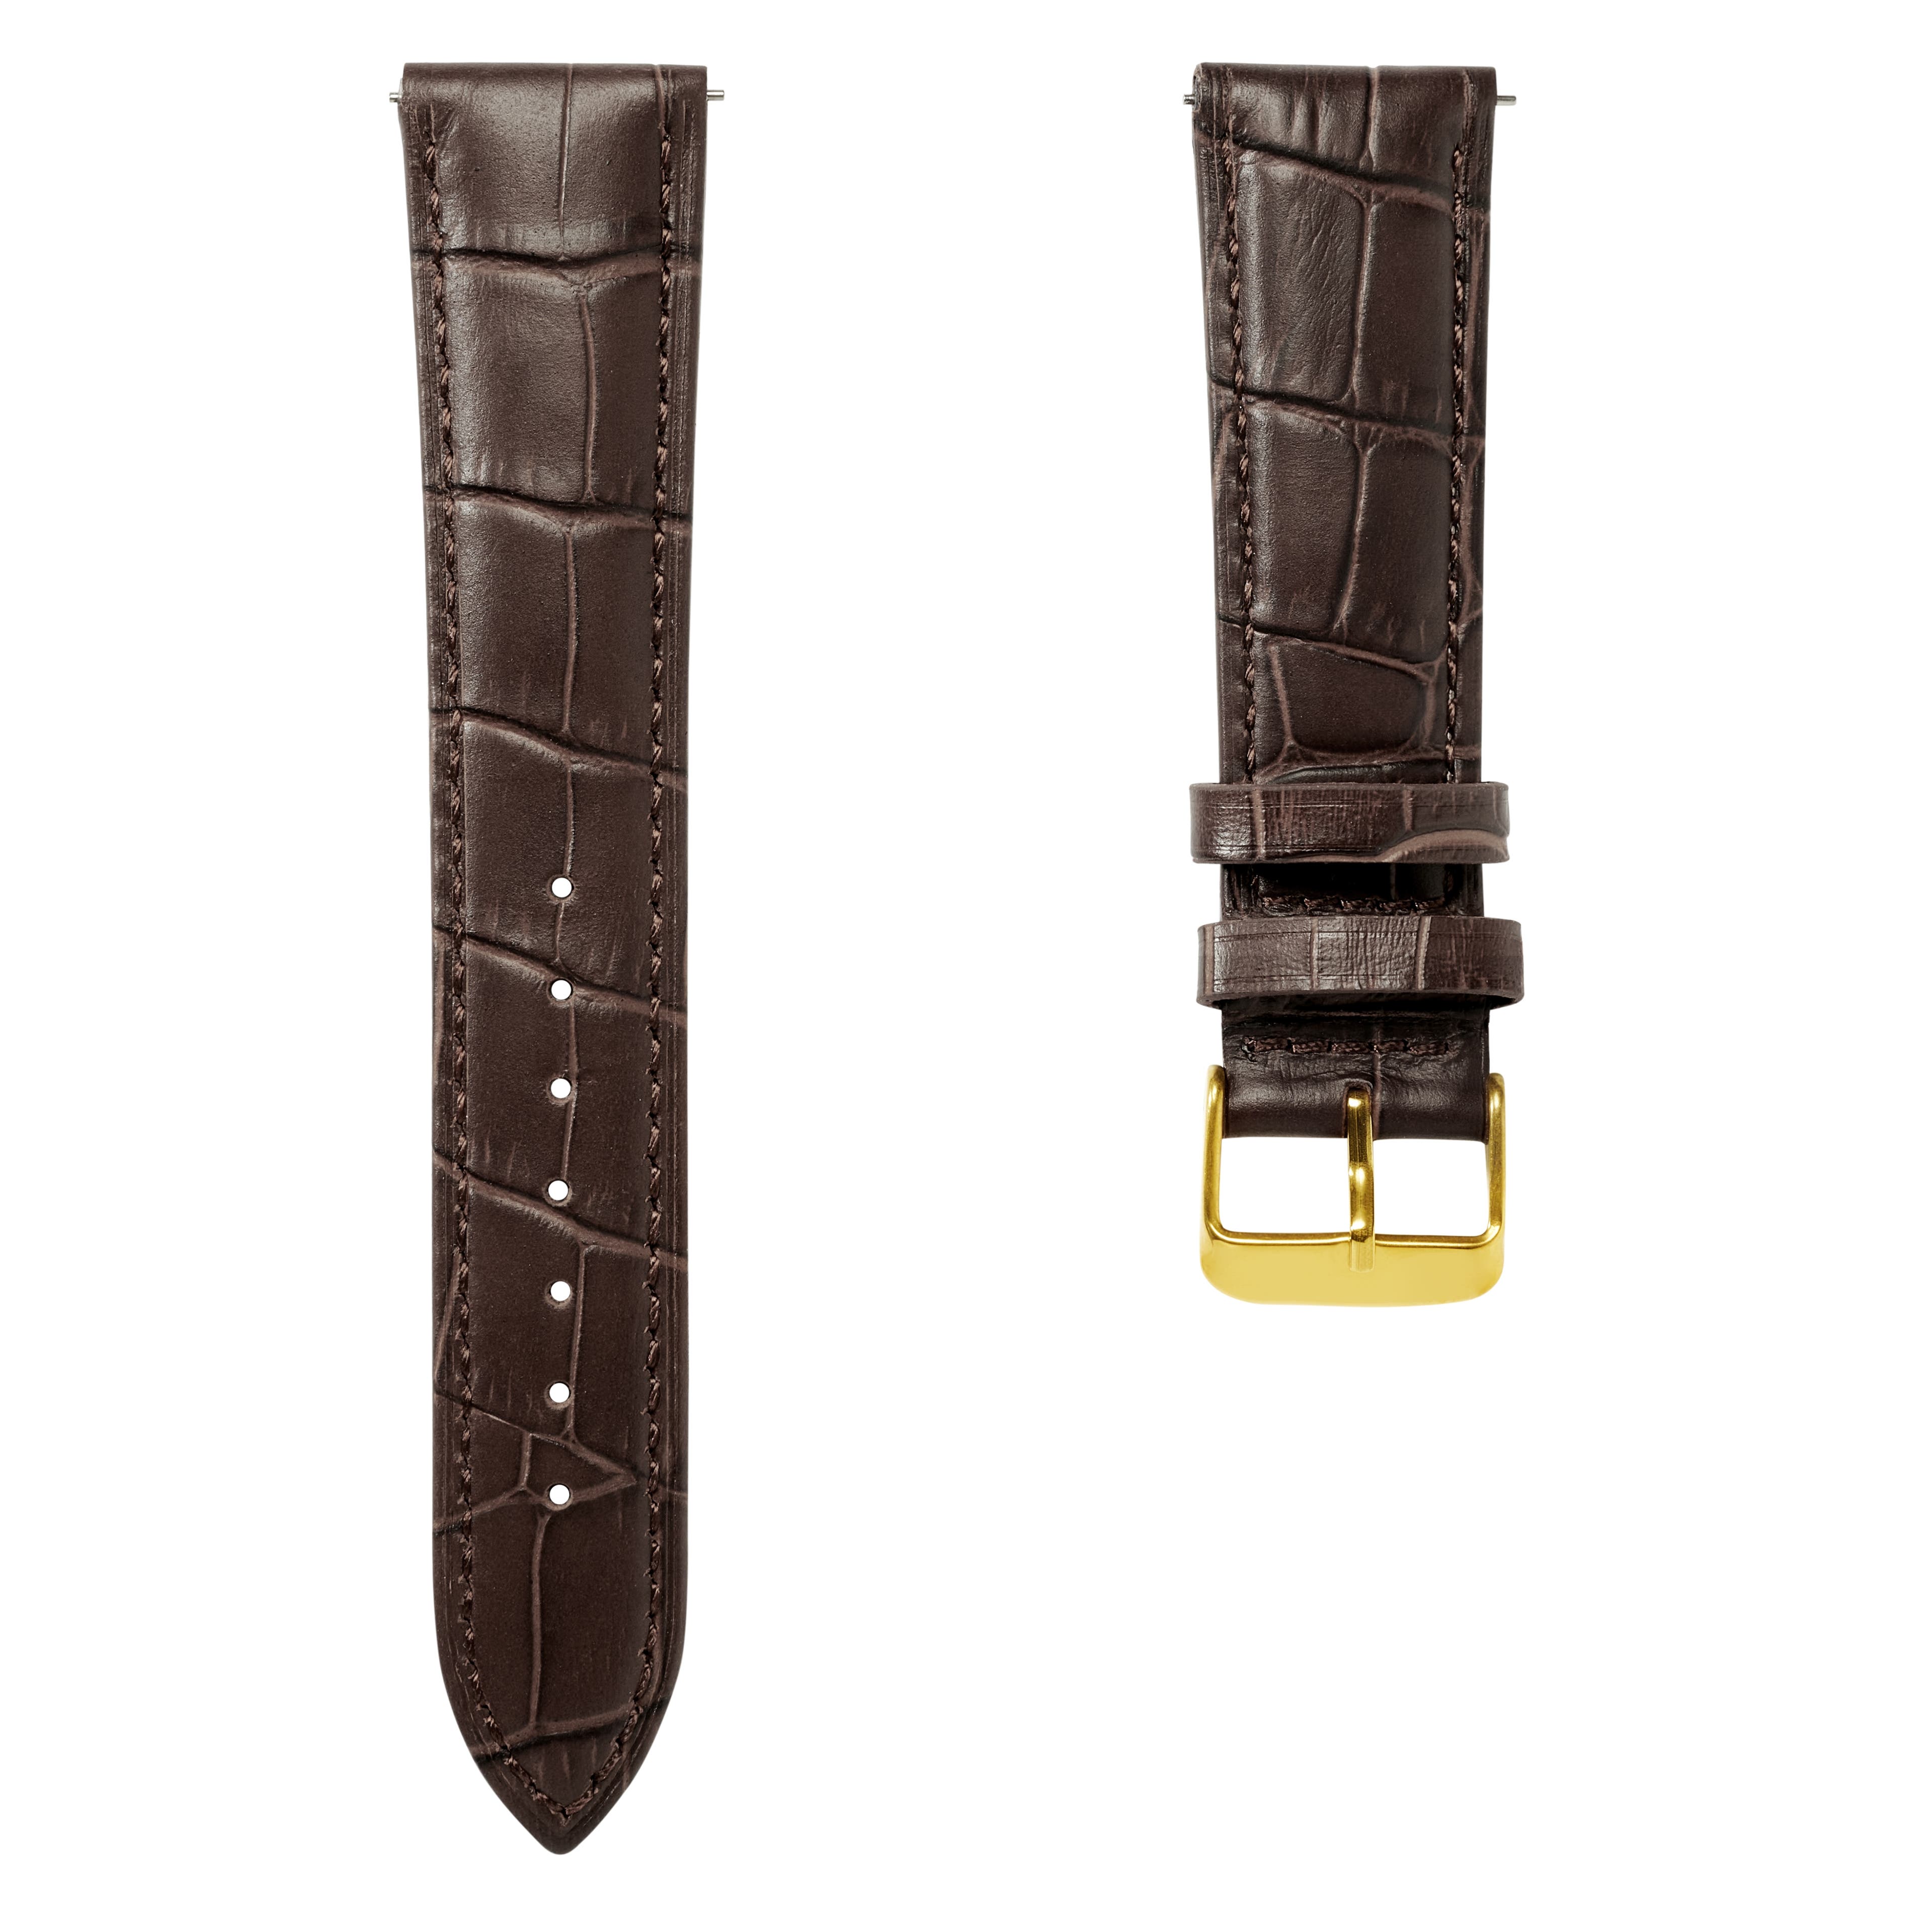 Pulseira de Relógio em Pele Castanha Escura com Relevo Crocodilo e Fivela Dourada de 18 mm - Libertação Rápida